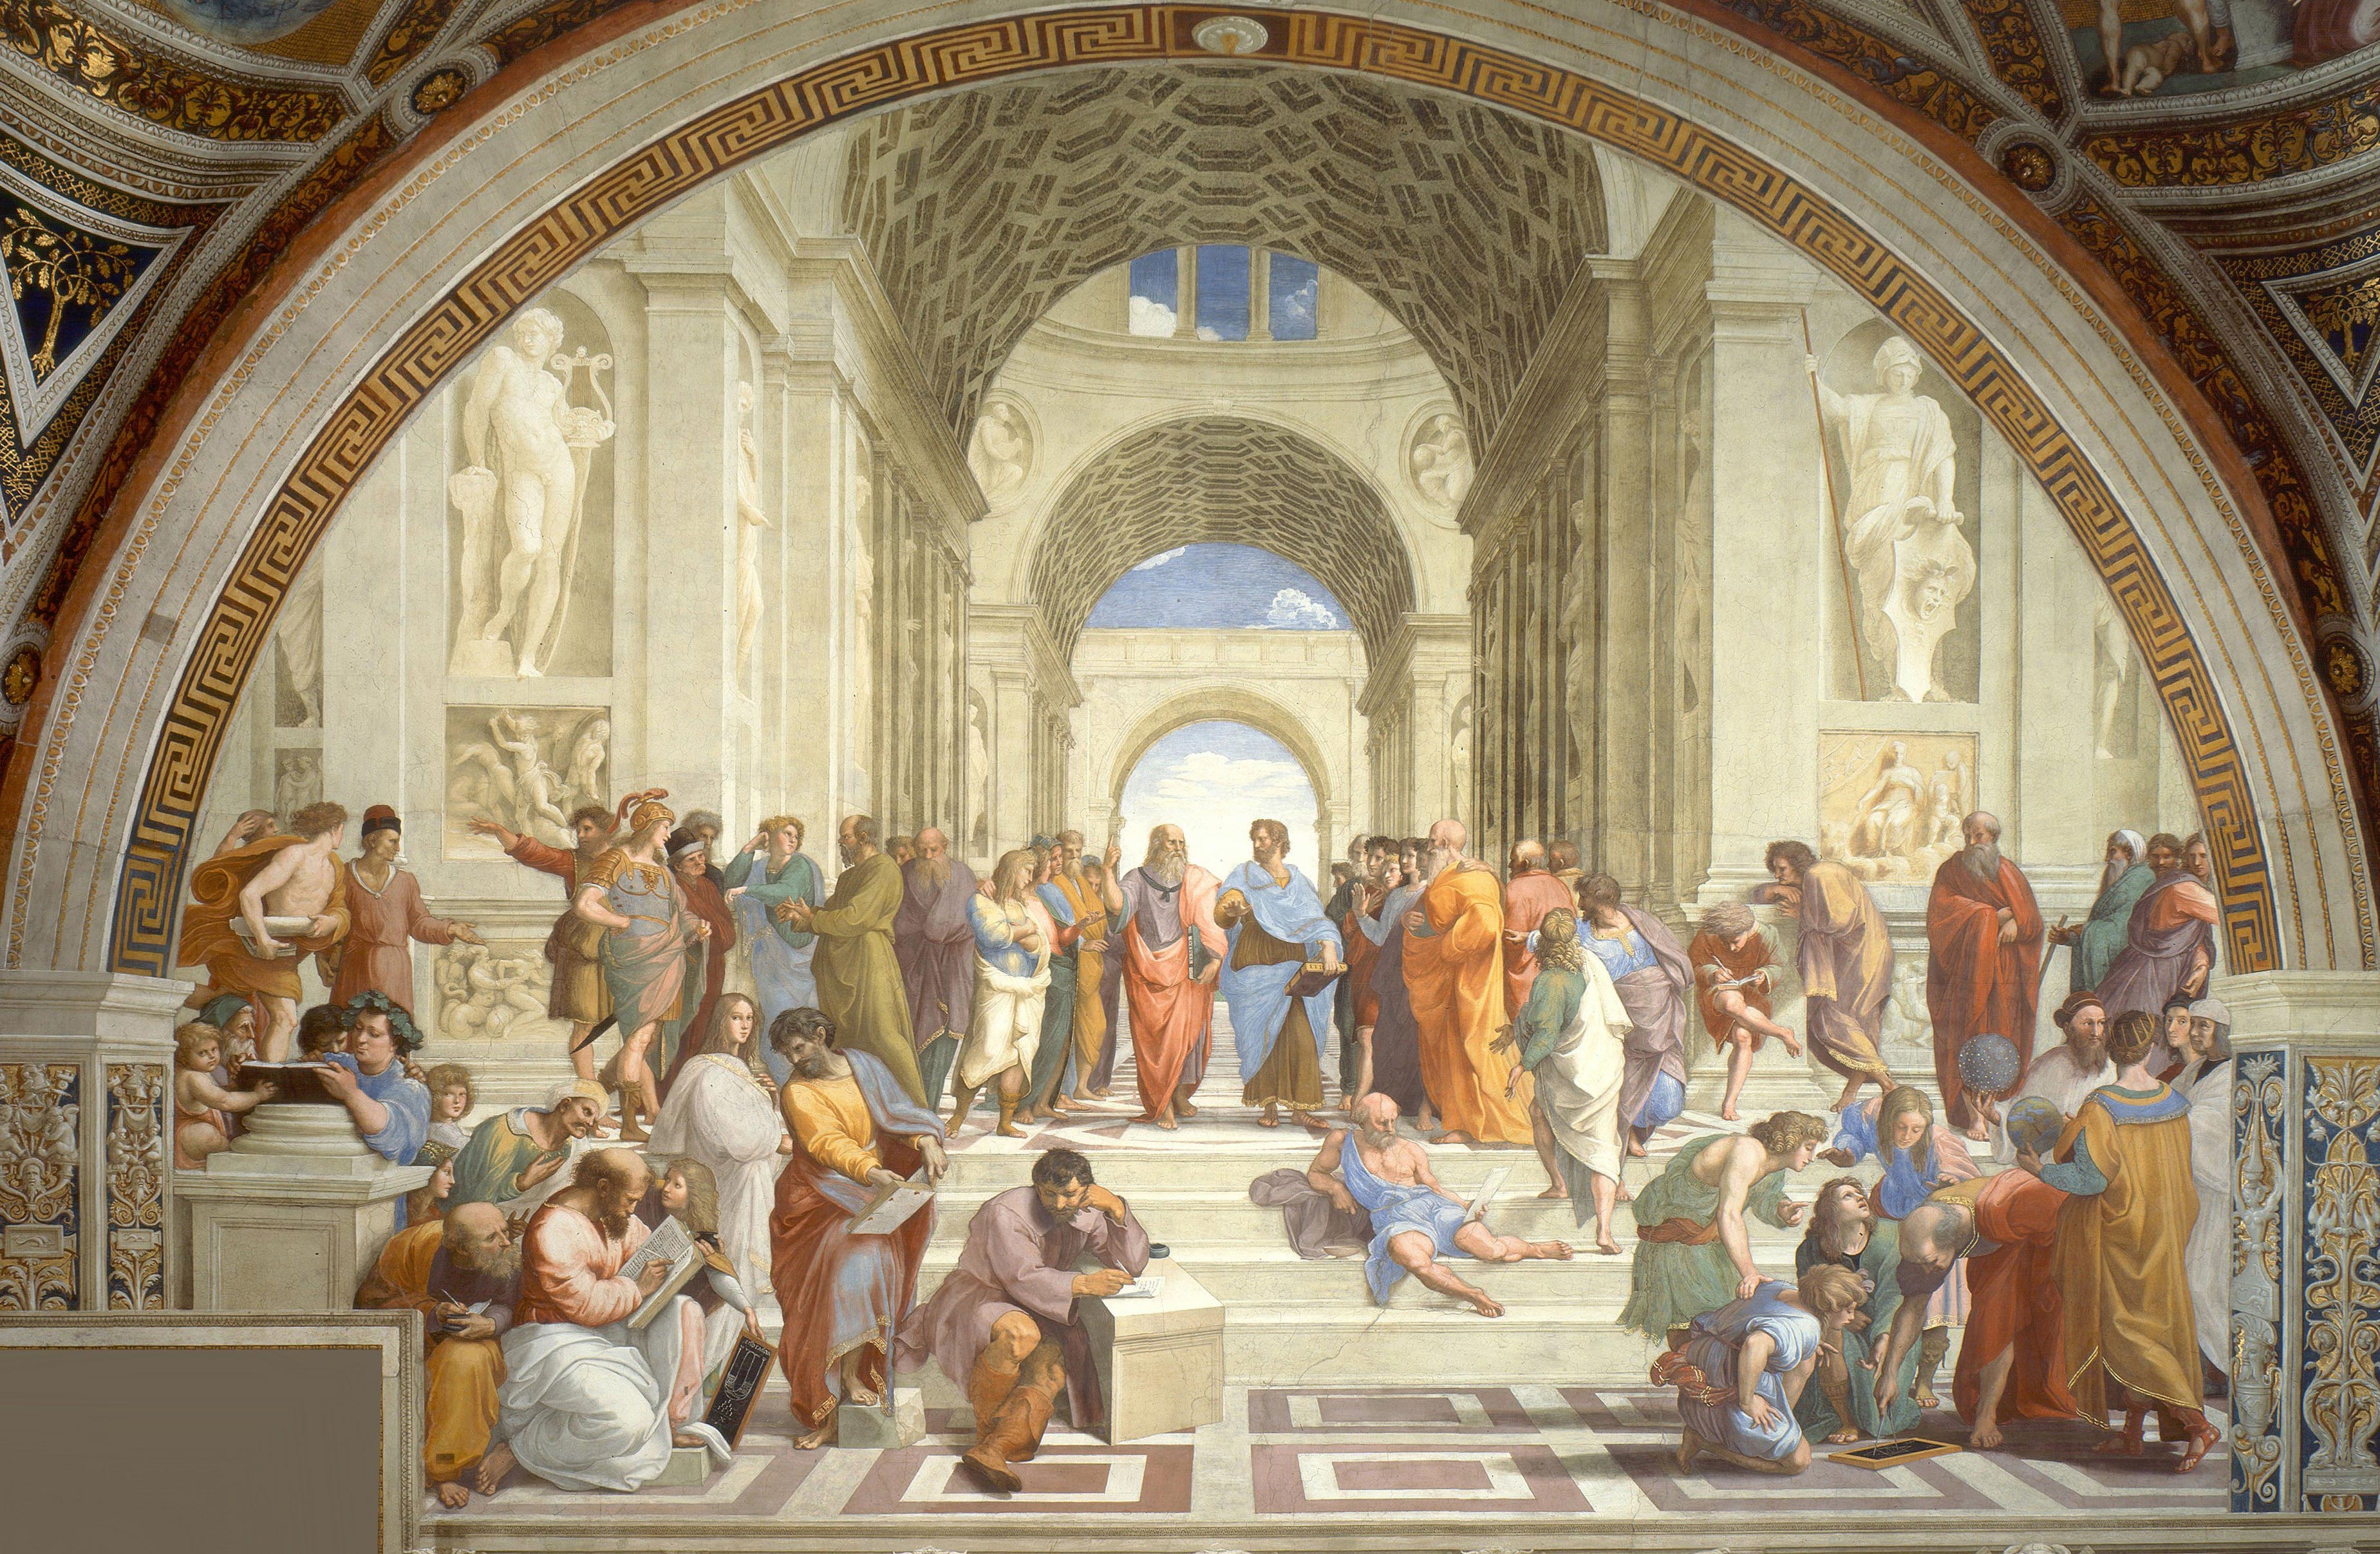 Artistic People Art by Michelangelo Buonarotti